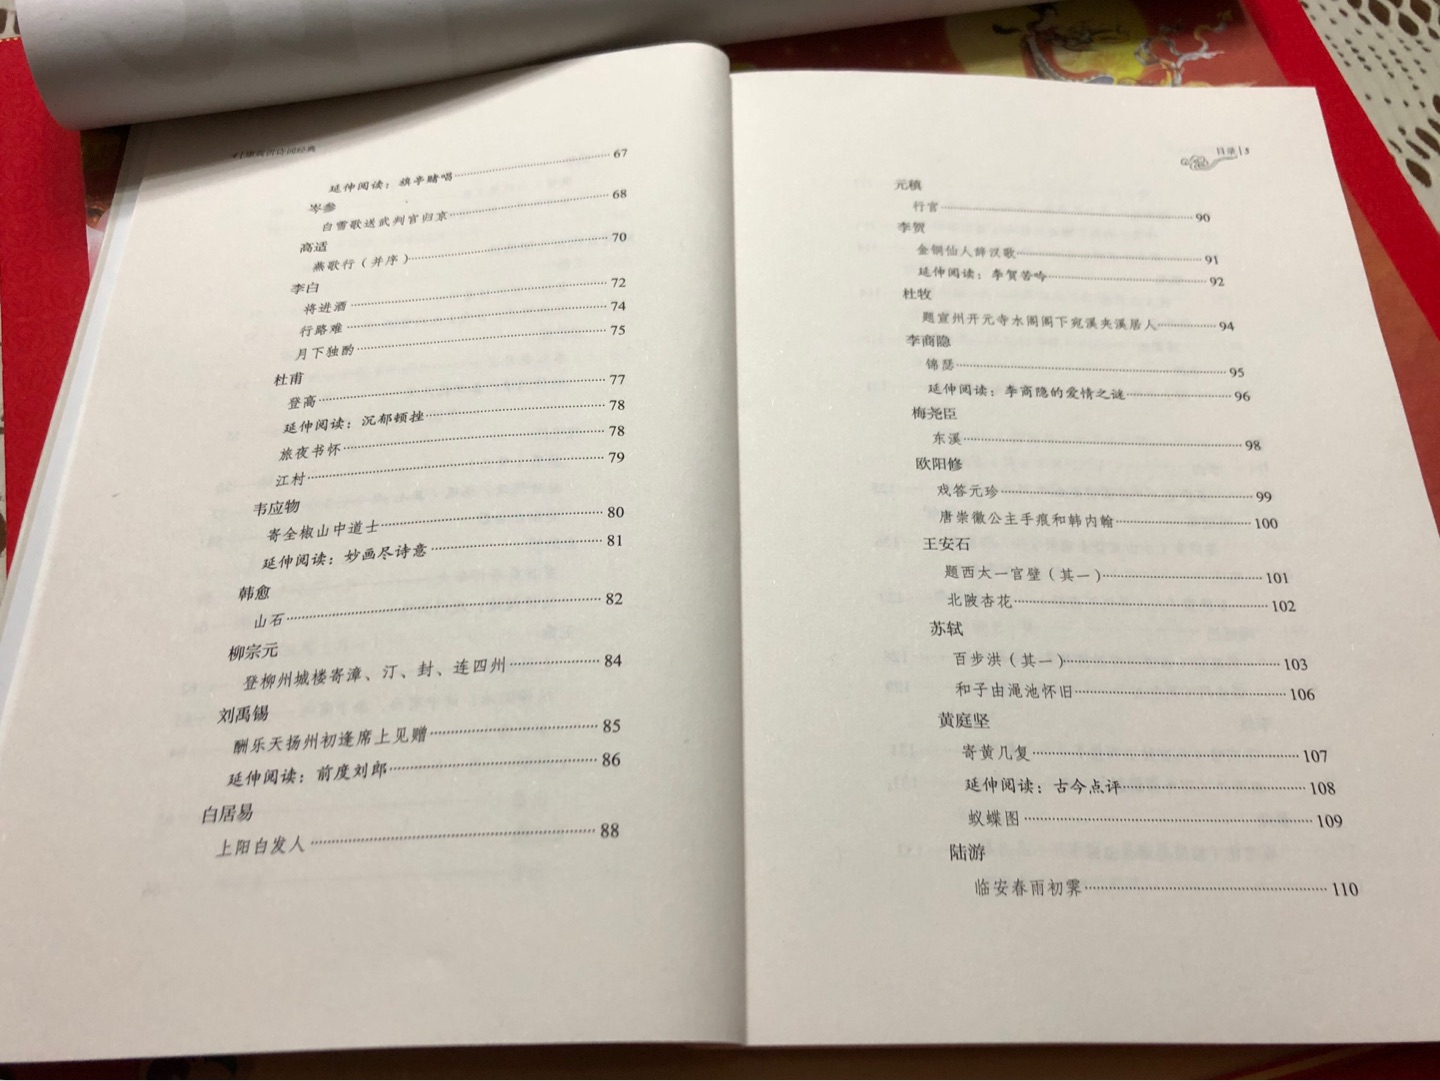 作为一个中国古诗词研究的学者，康震教授愿意做中国古诗词的大众普及工作，非常难得，一定好好读这本书。